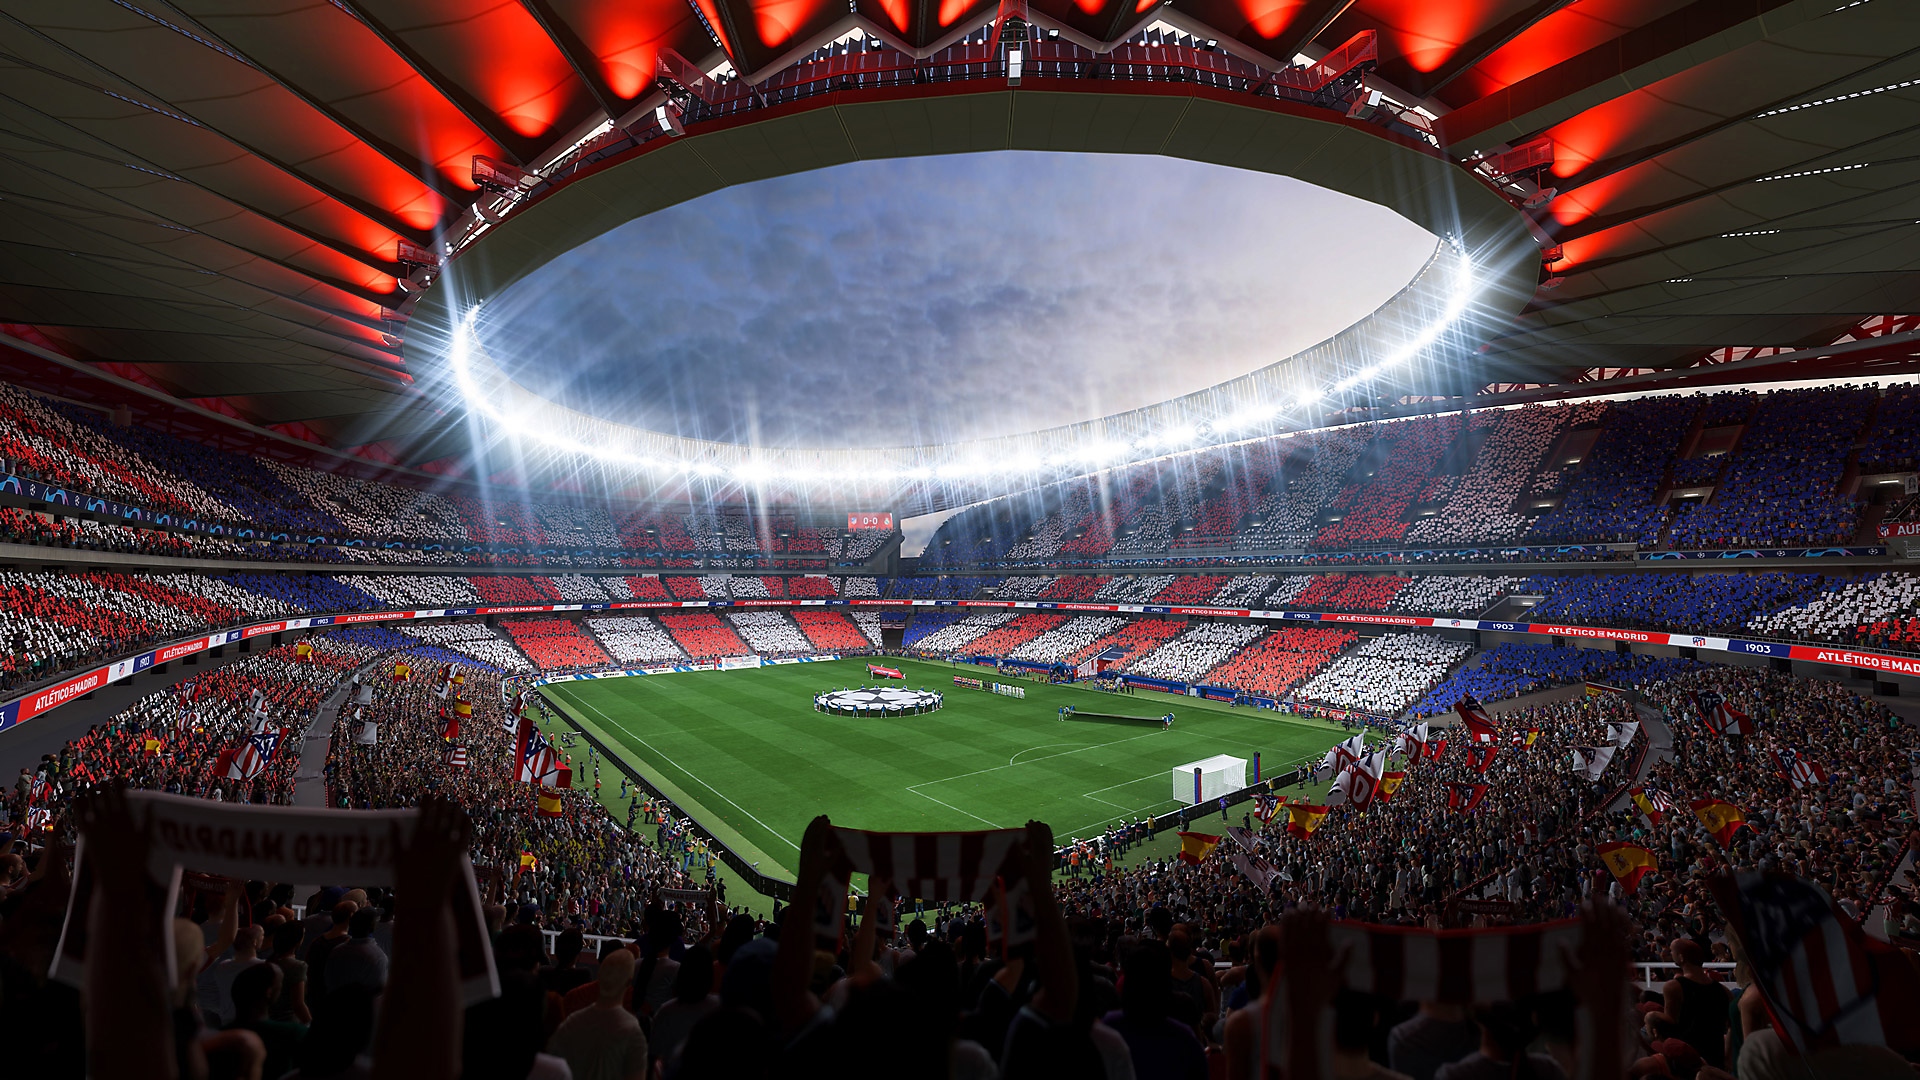 Zrzut ekranu z gry EA Sports FIFA 23 pokazujący stadion piłkarski